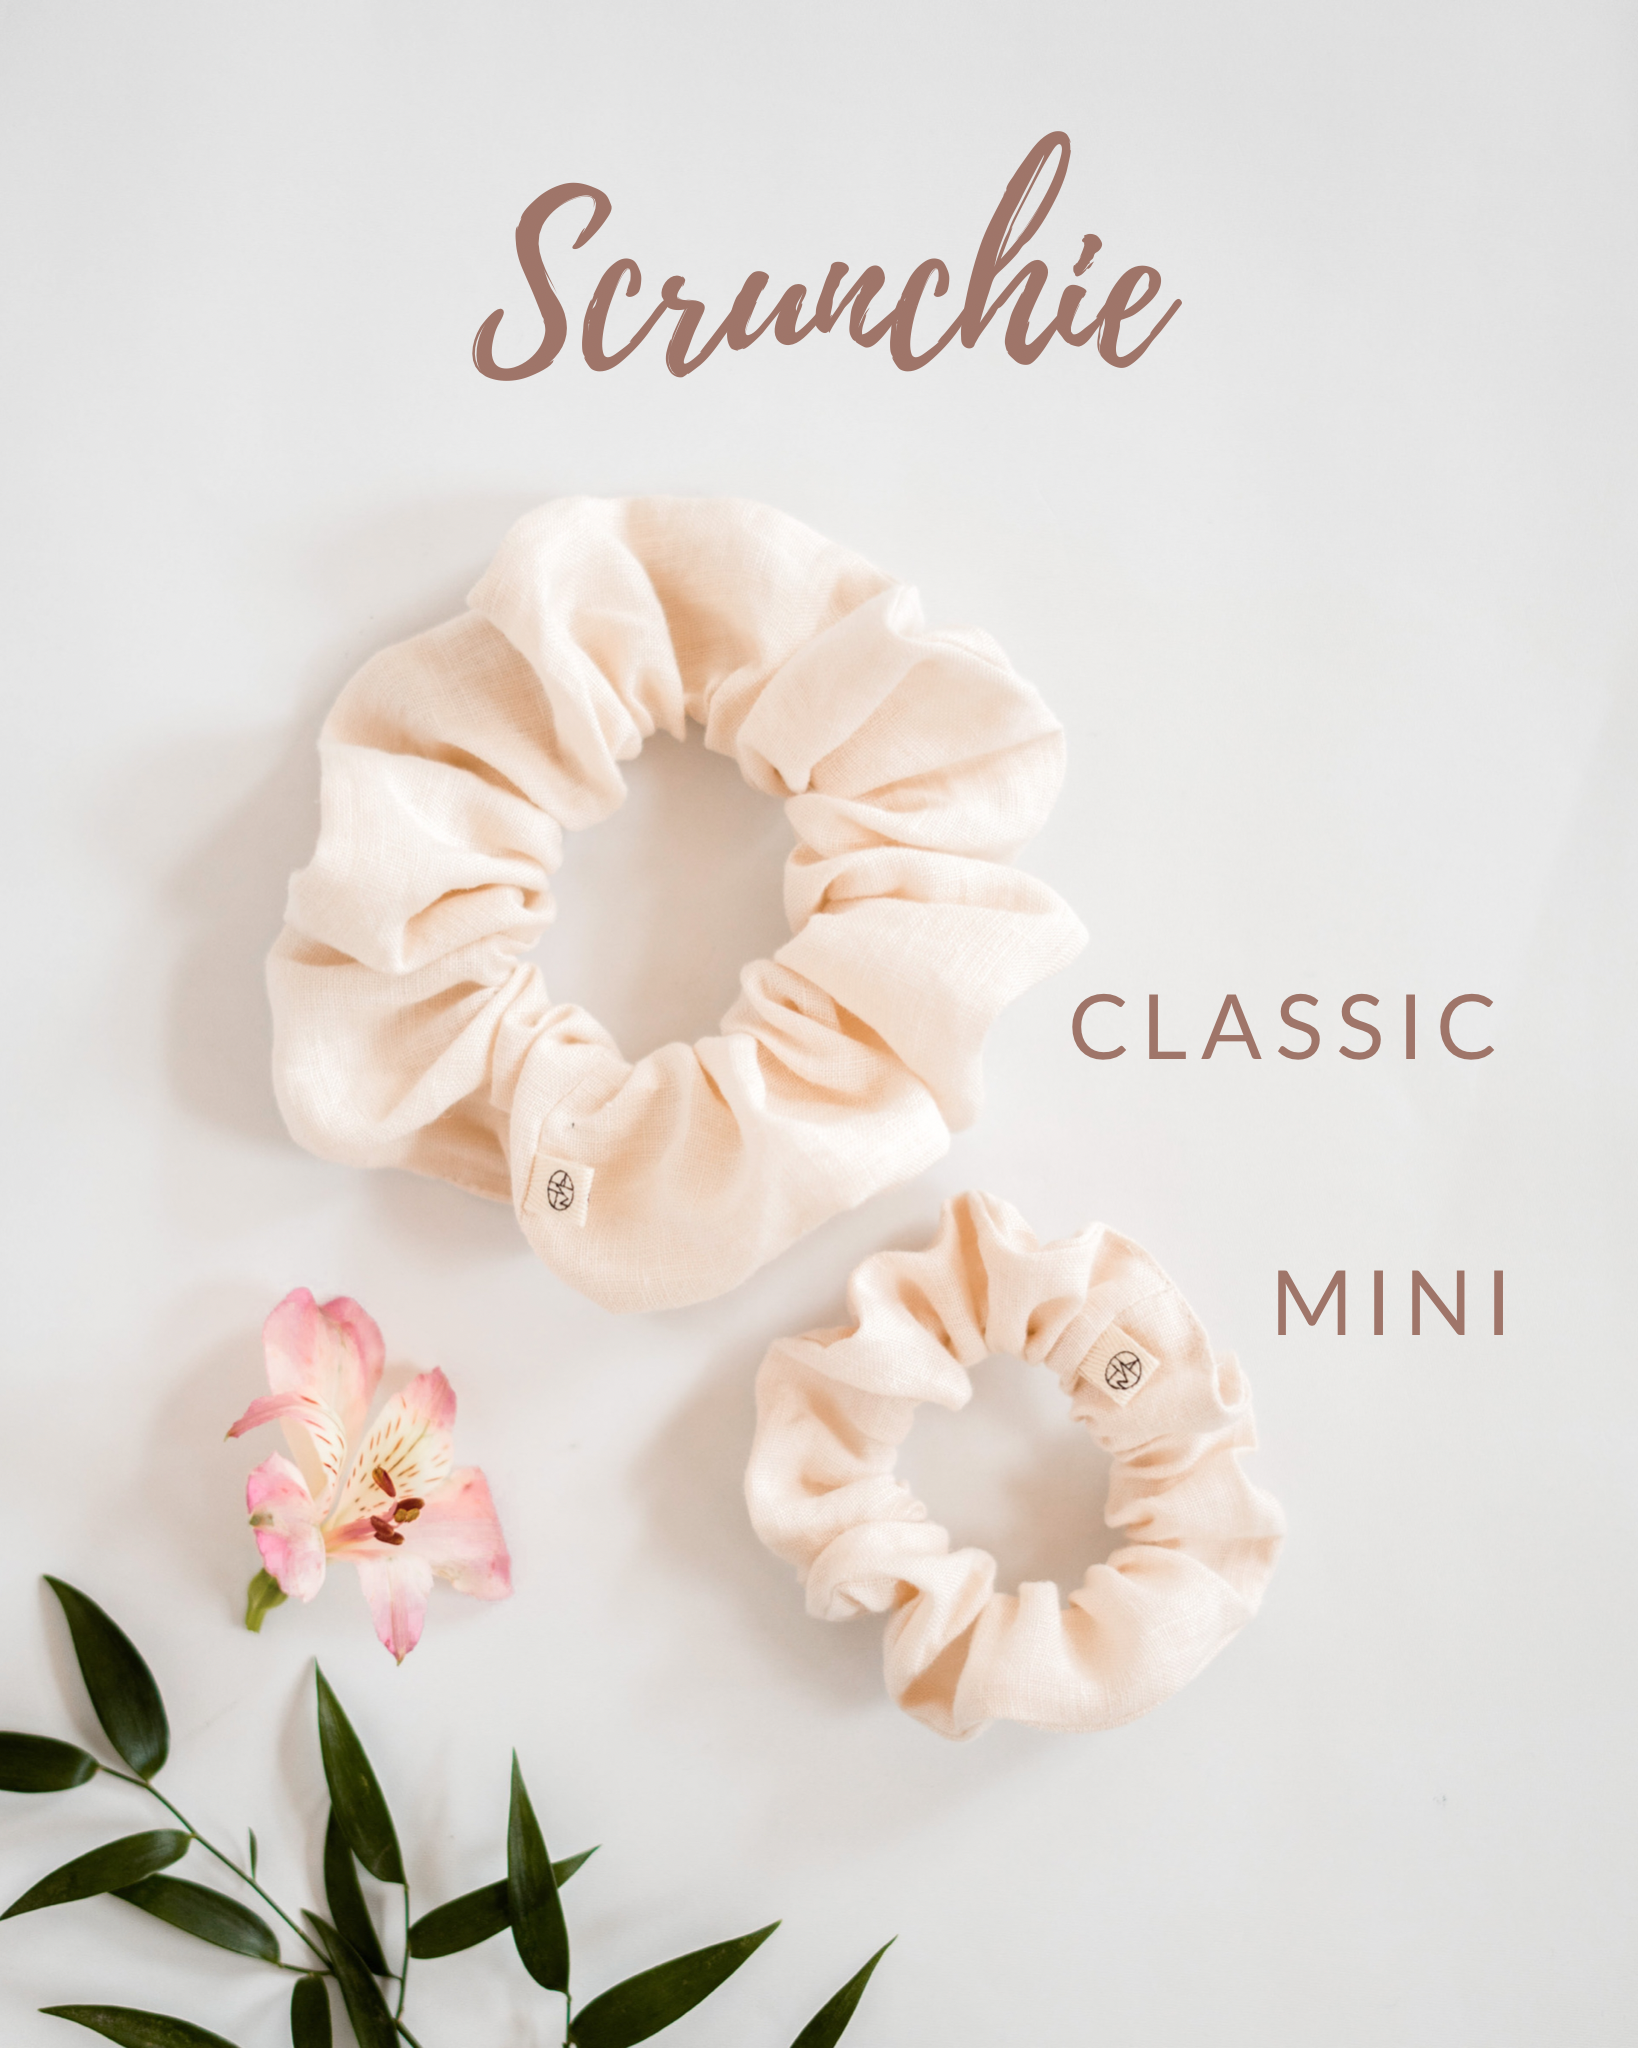 Scrunchie, classic